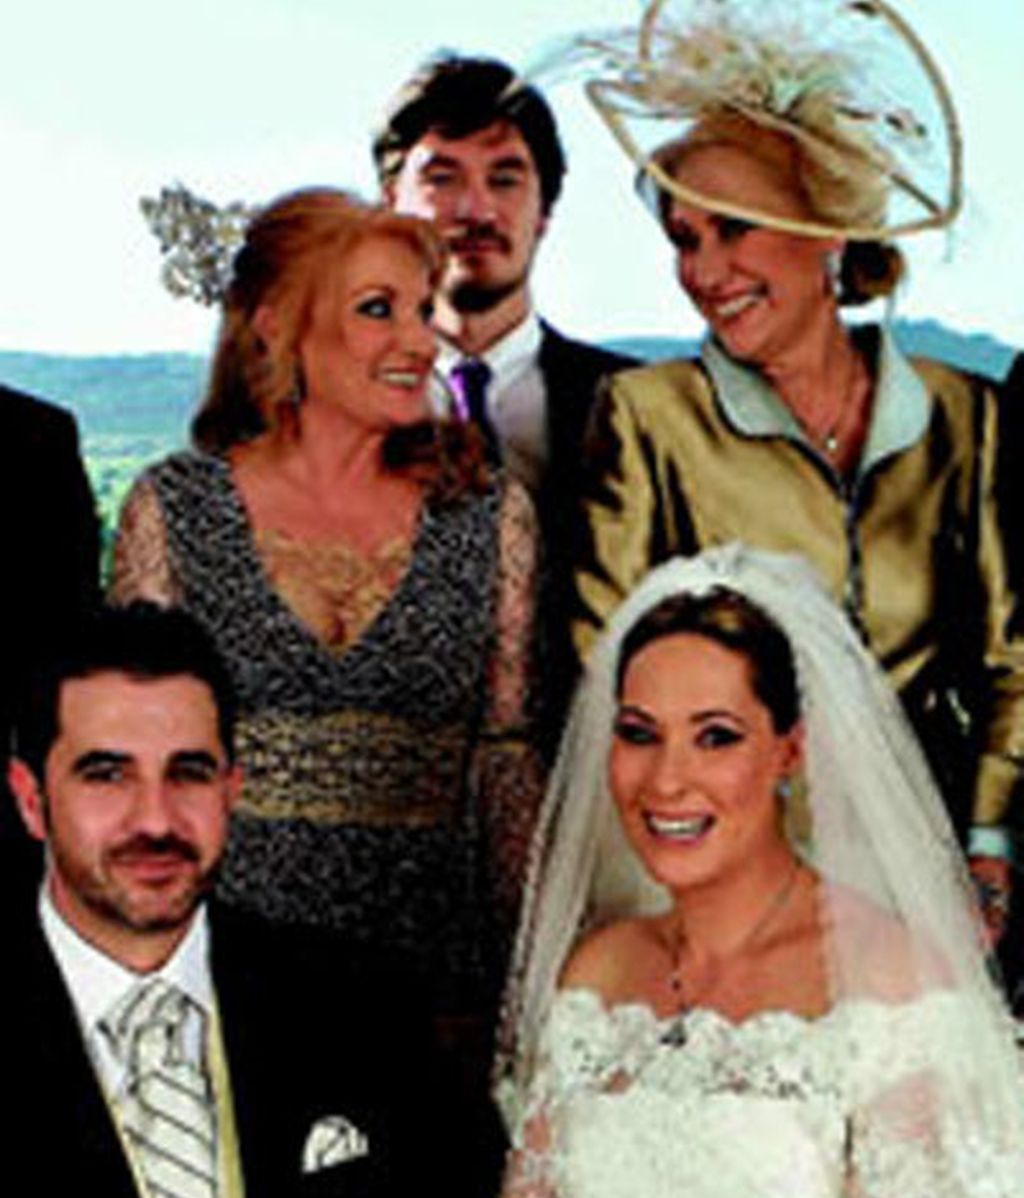 La boda de Chayo, los detalles de la portada de Hola